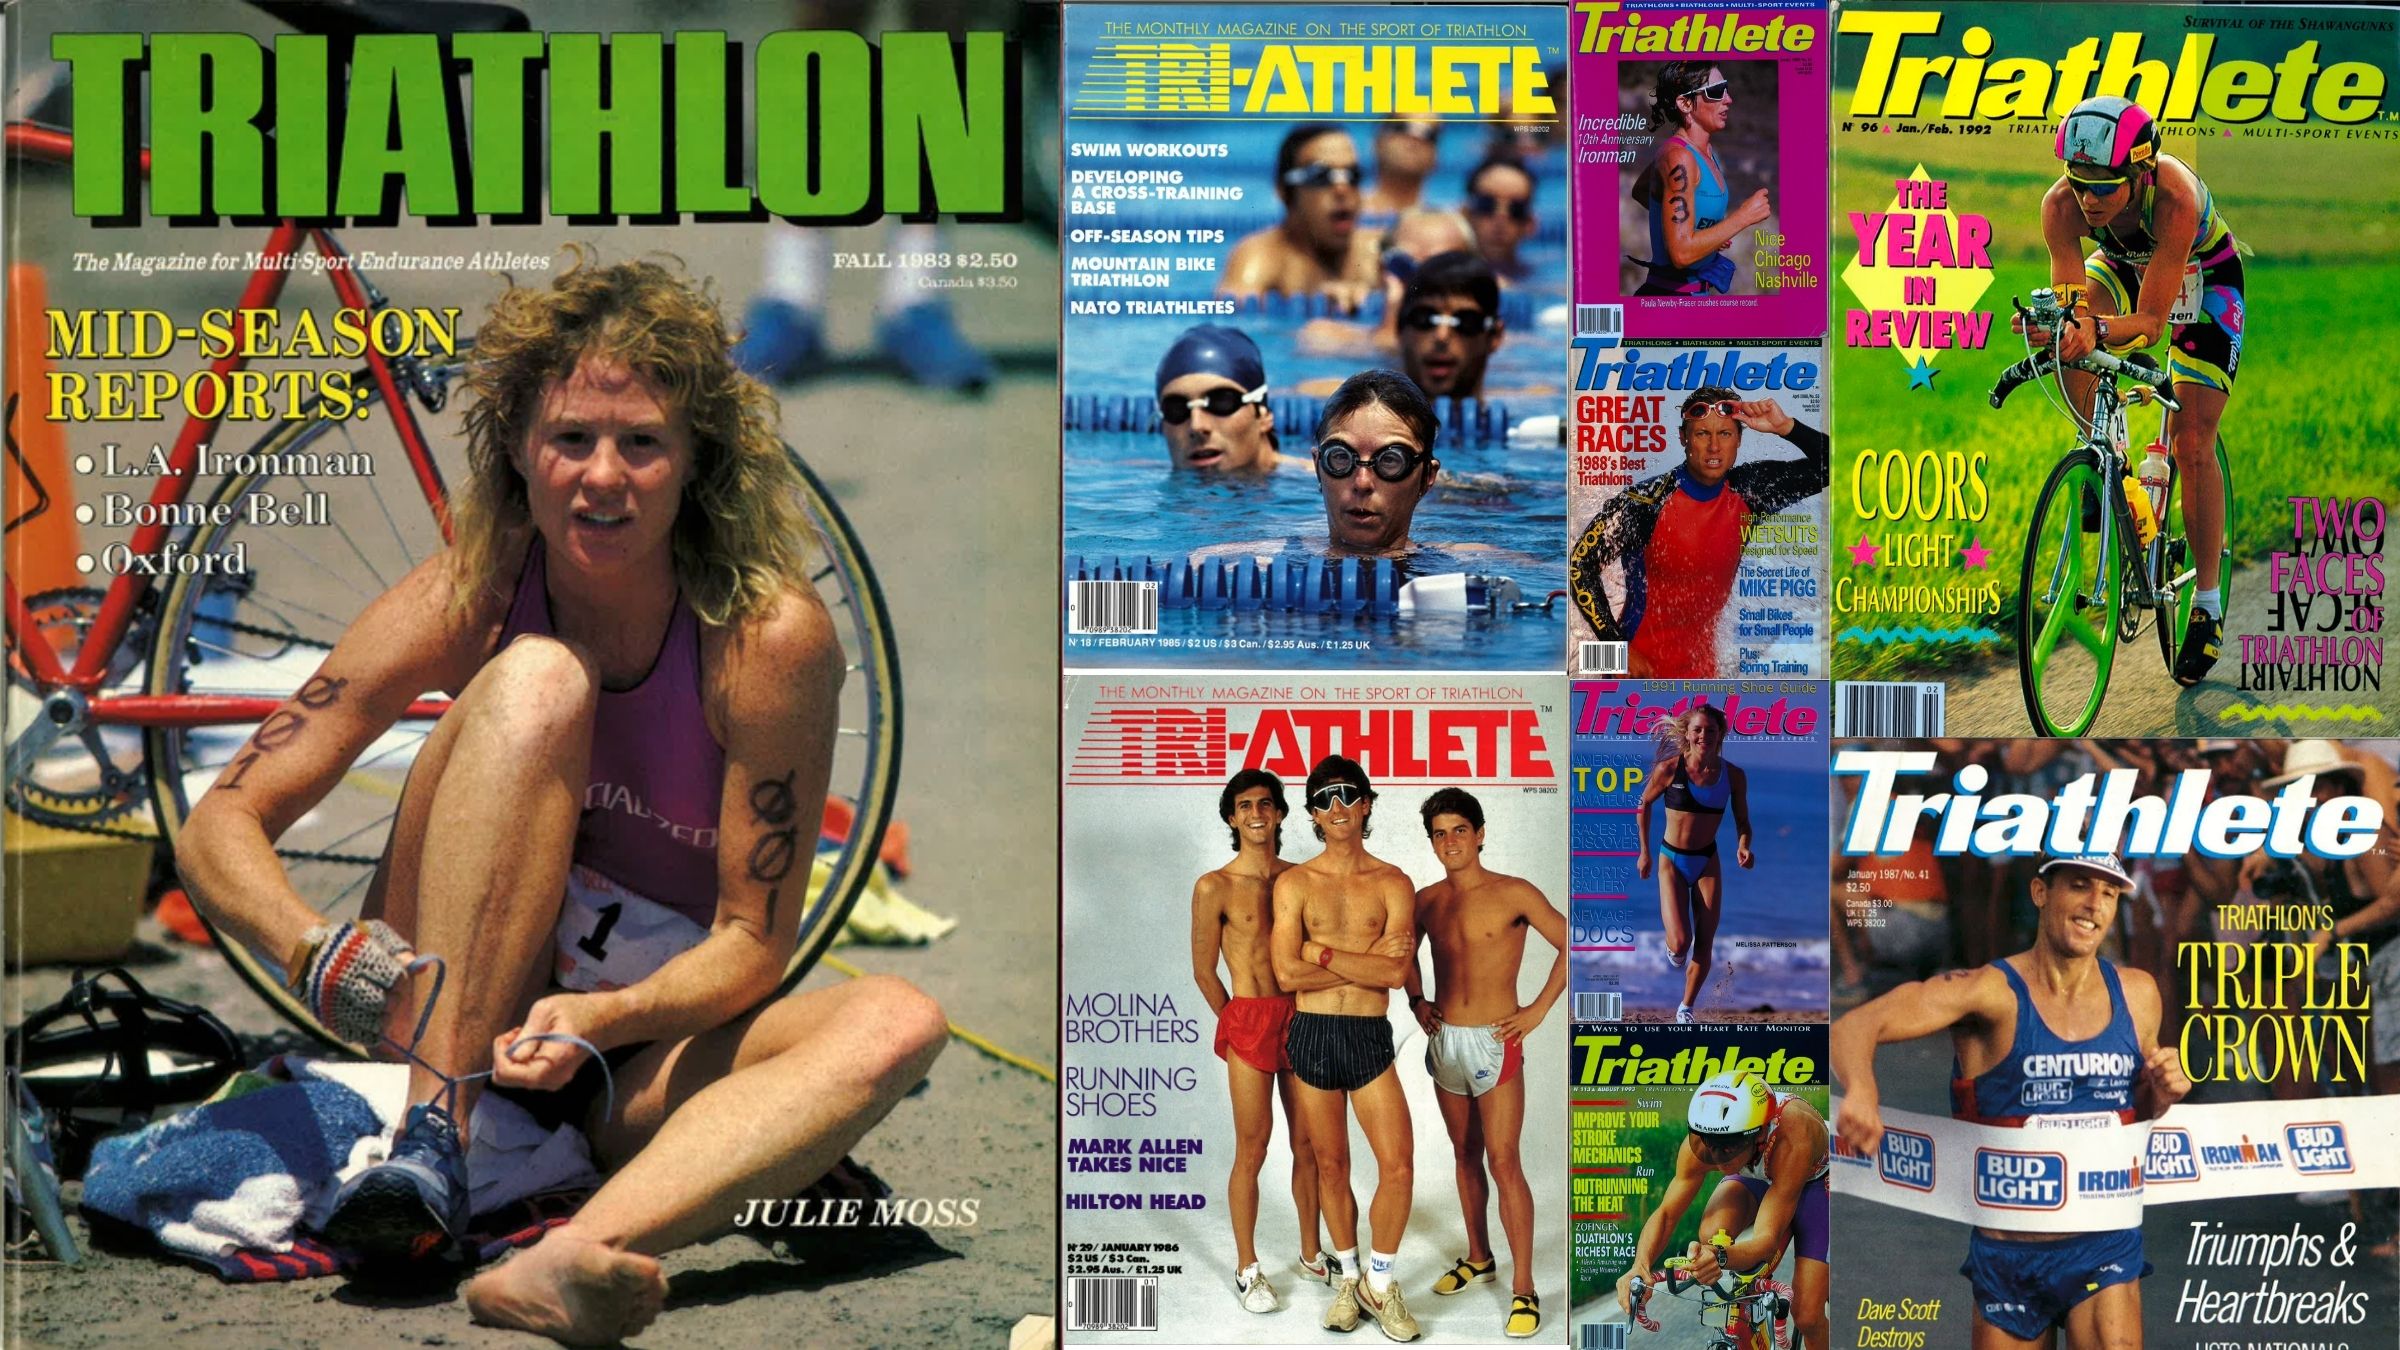 The triathlon shoes you'll get noticed in - Triathlon Magazine Canada